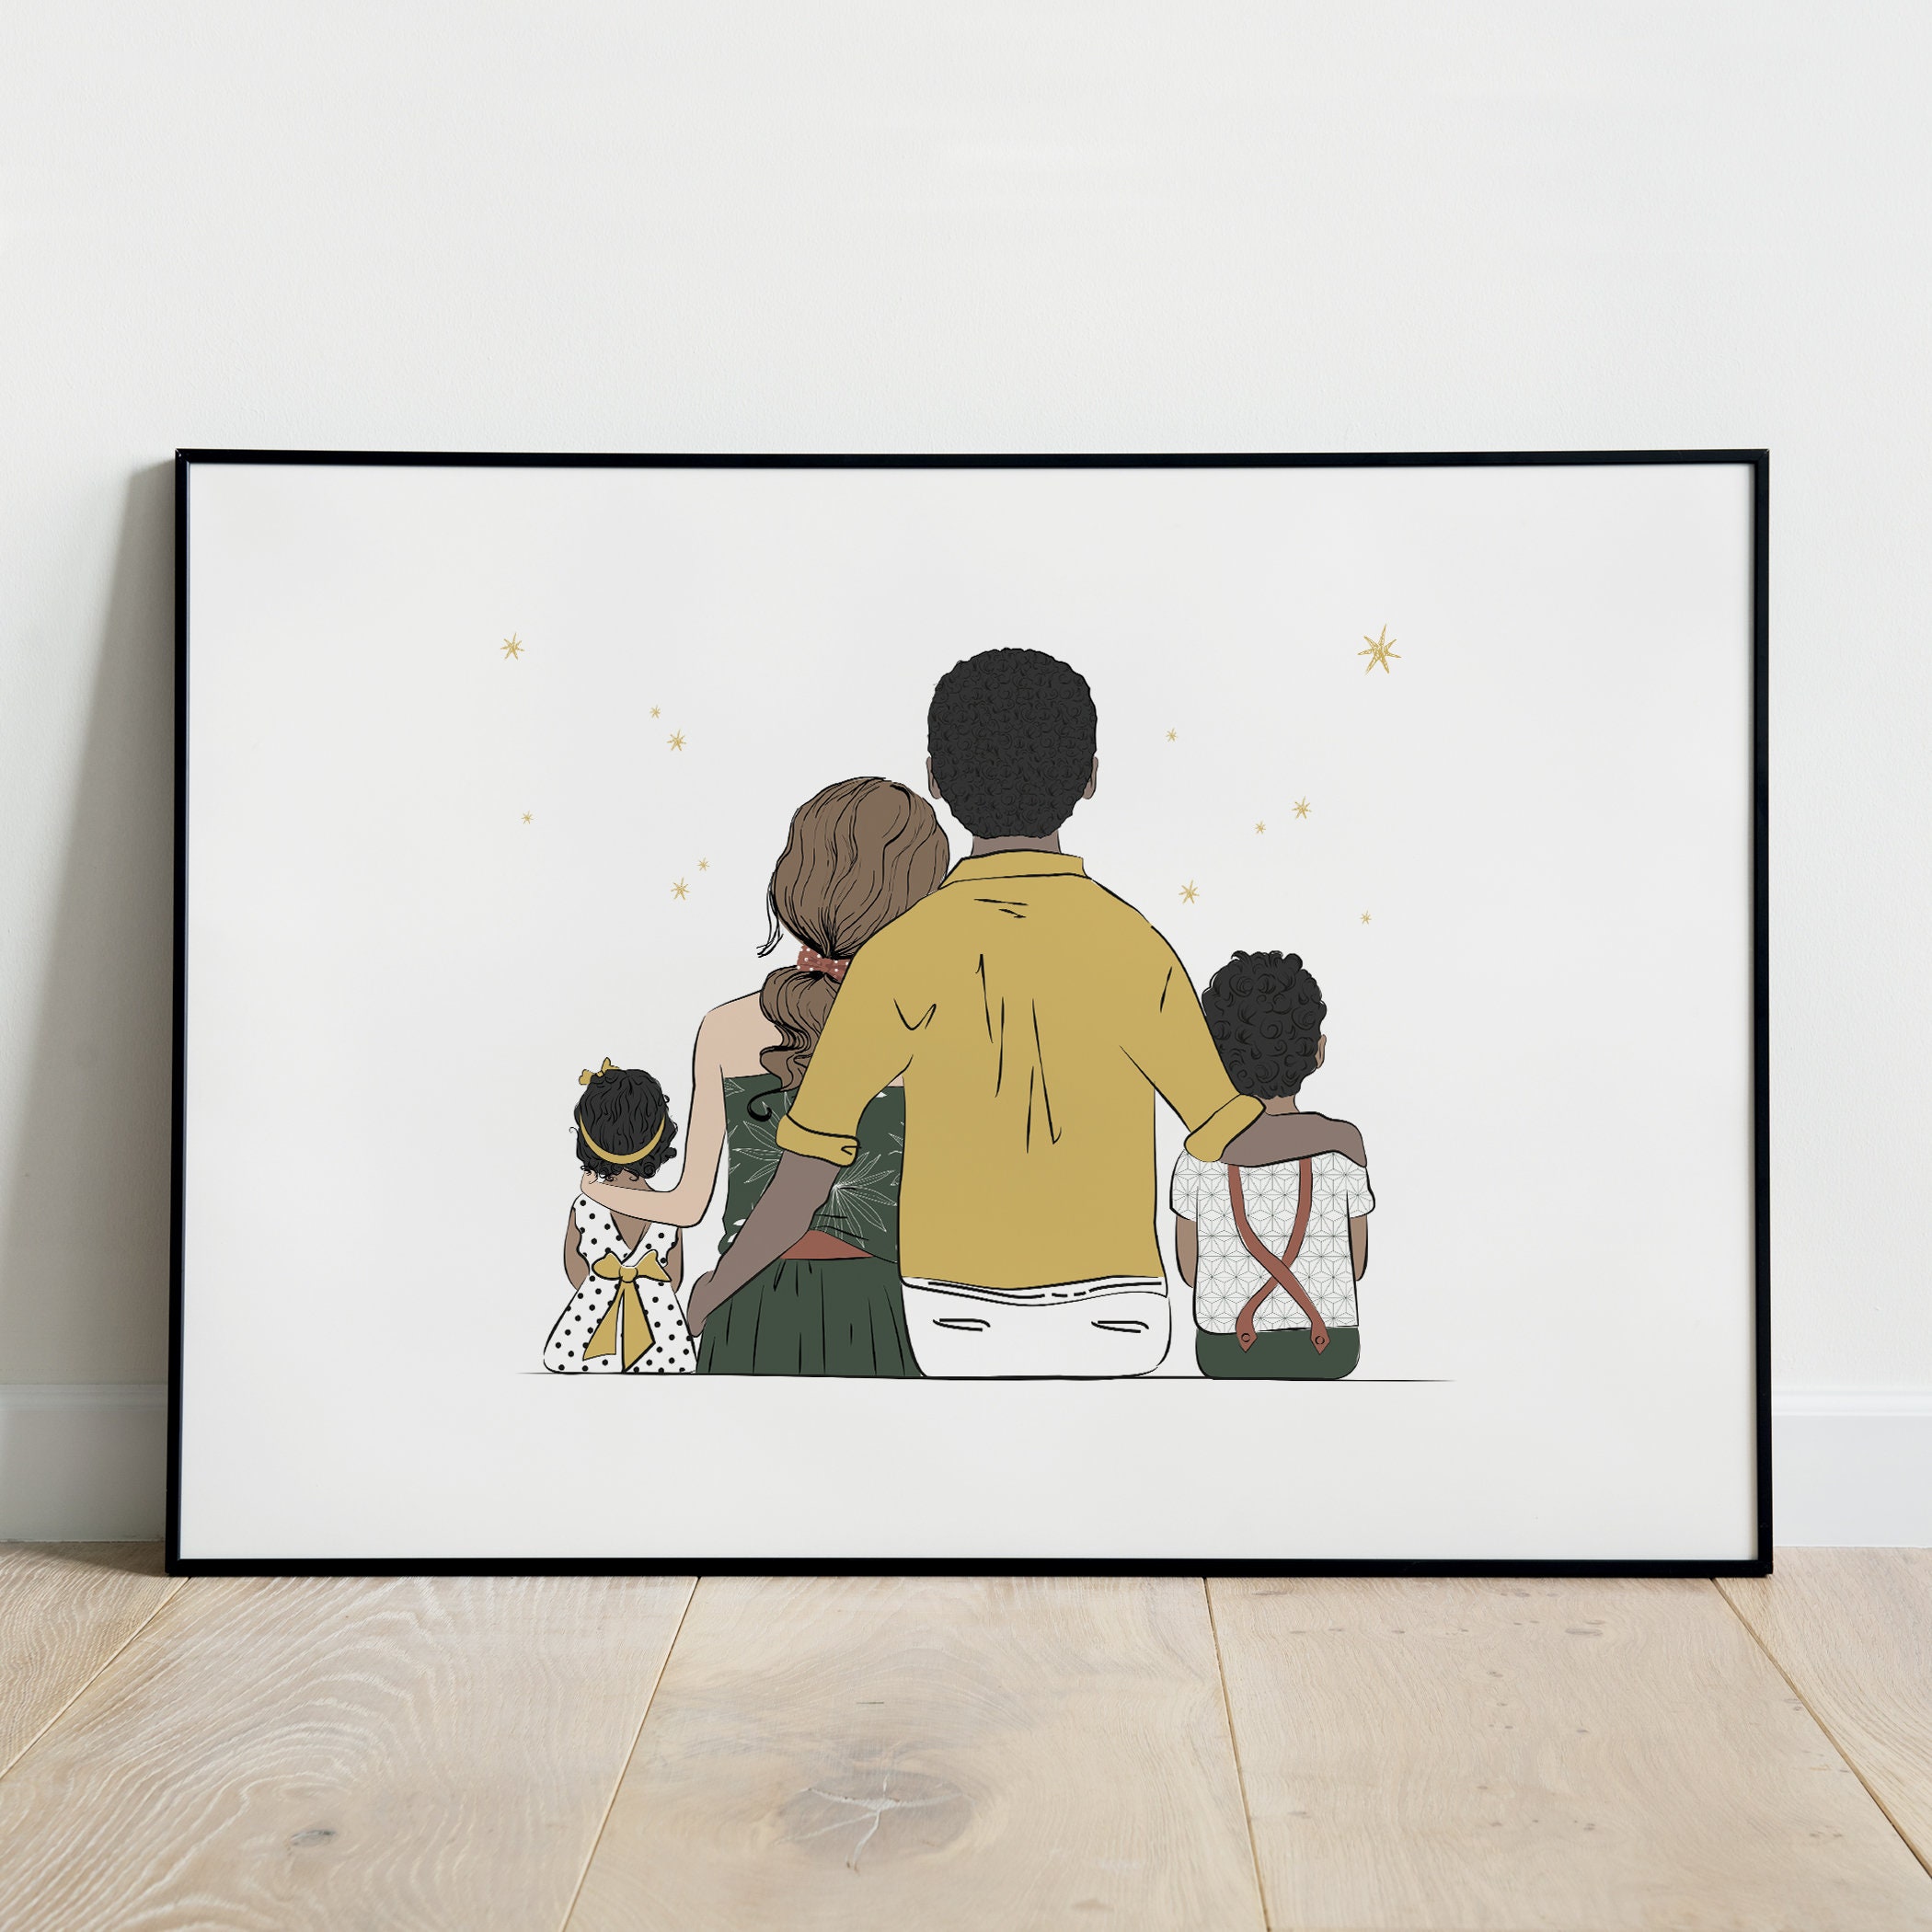 Affiche Personnalisée Famille, Décoration Chambre Bébé/Enfant, Cadeau Personnalisé Naissance, Custom